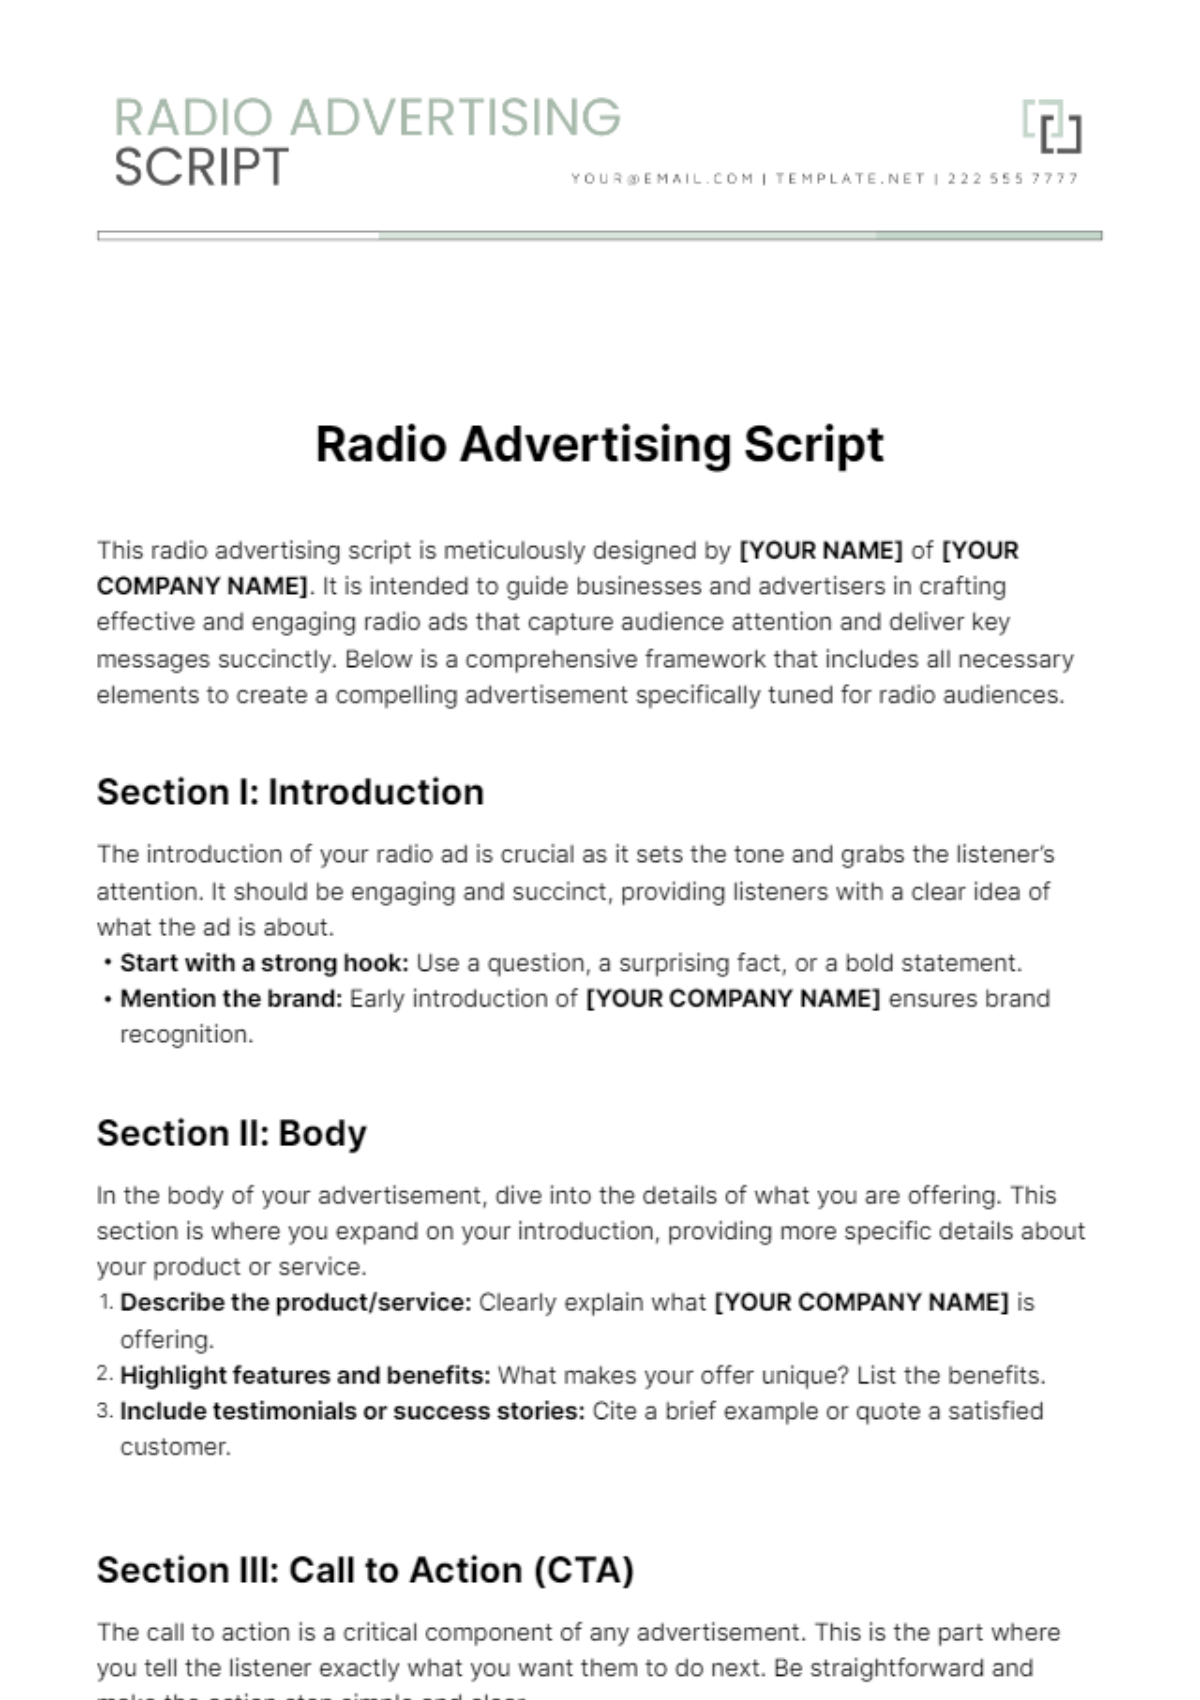 Radio Advertising Script Template